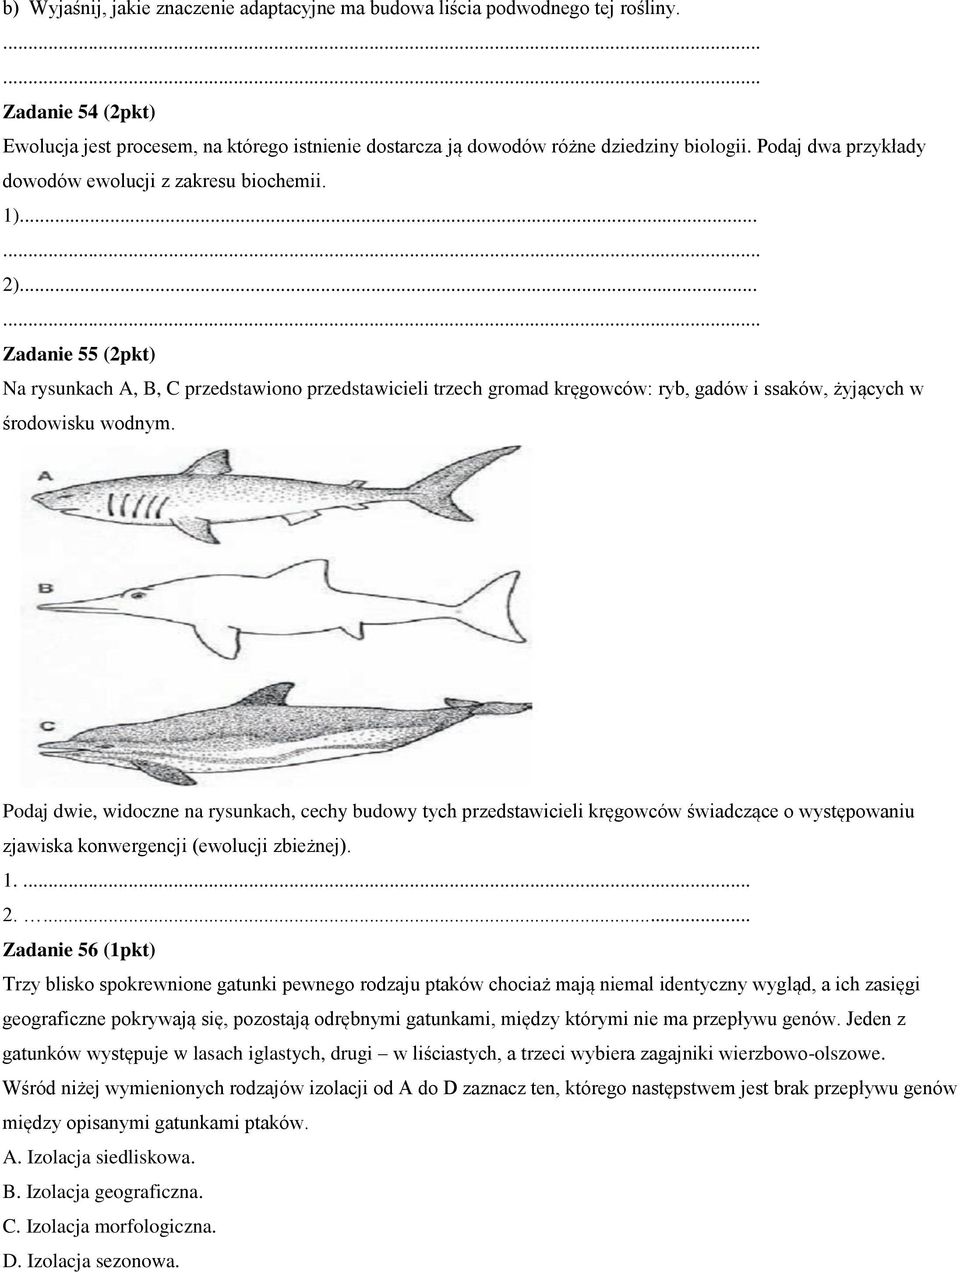 .. Zadanie 55 (2pkt) Na rysunkach A, B, C przedstawiono przedstawicieli trzech gromad kręgowców: ryb, gadów i ssaków, żyjących w środowisku wodnym.